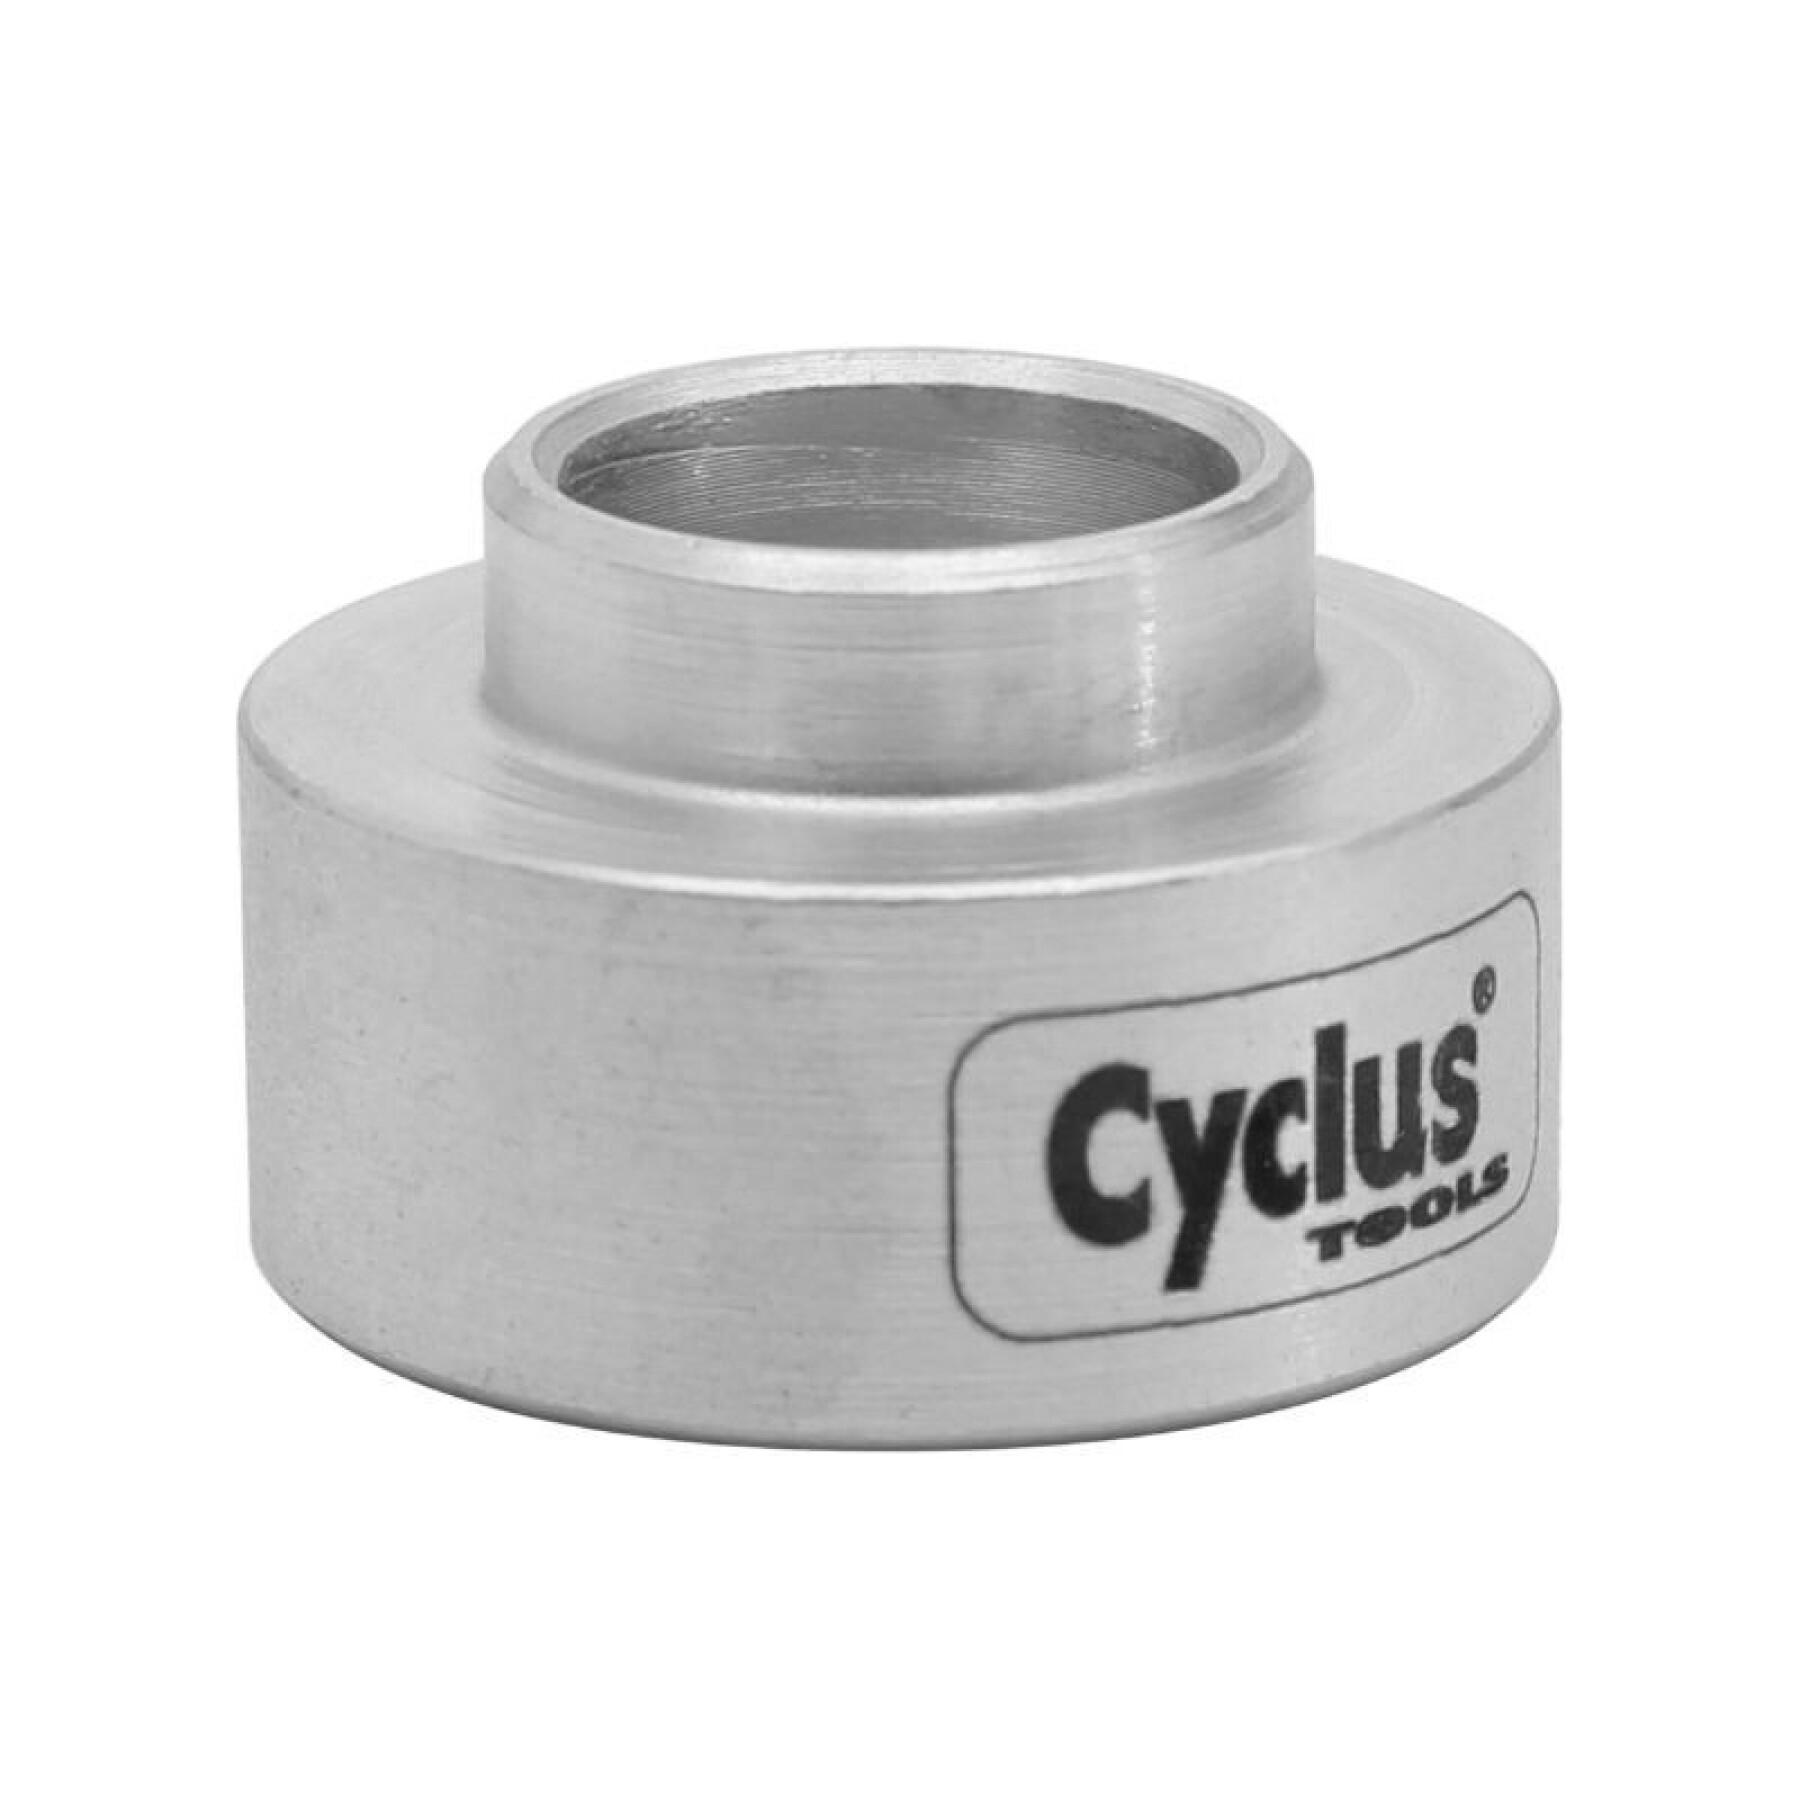 Ferramenta pro Suporte de rolamentos para utilização com a prensa de rolamentos Cyclus ref 180126